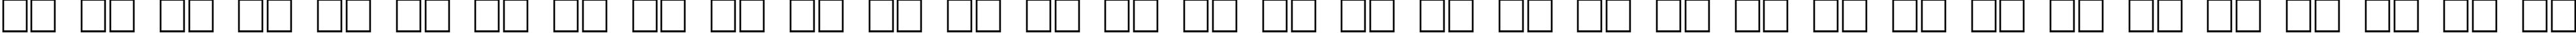 Пример написания русского алфавита шрифтом Ufrayd